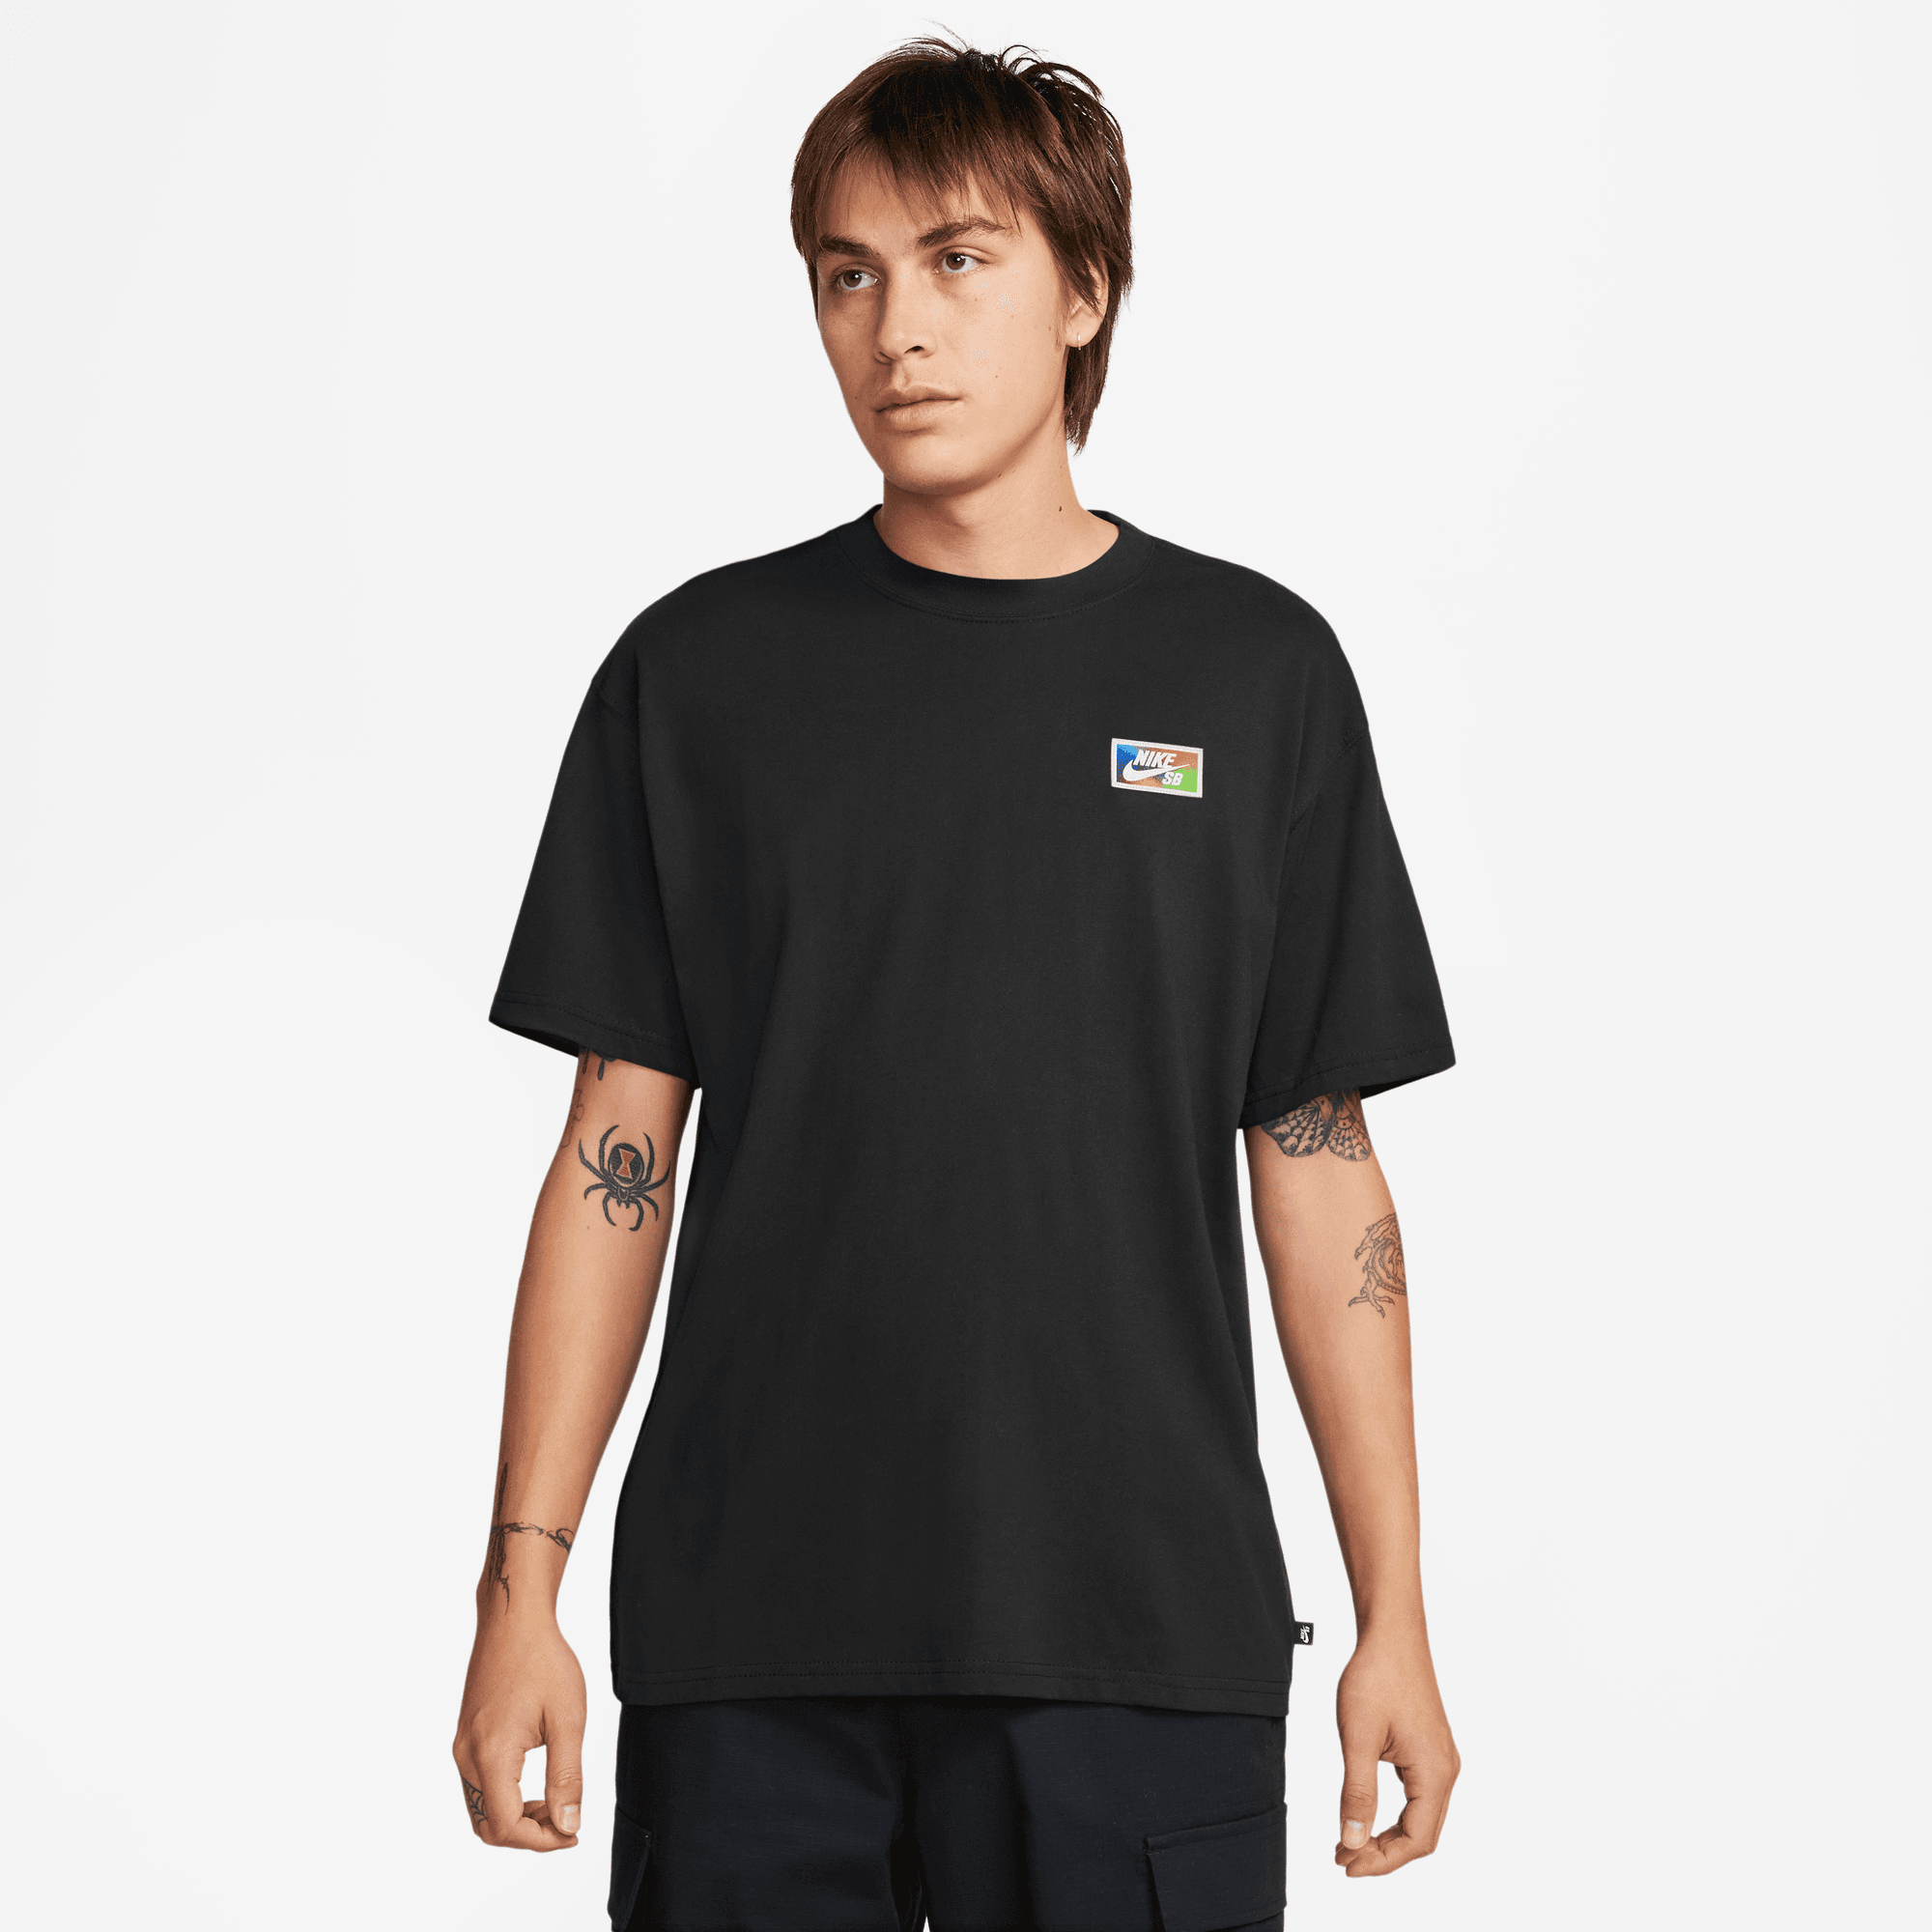 Thumbprint Nike SB T-Shirt